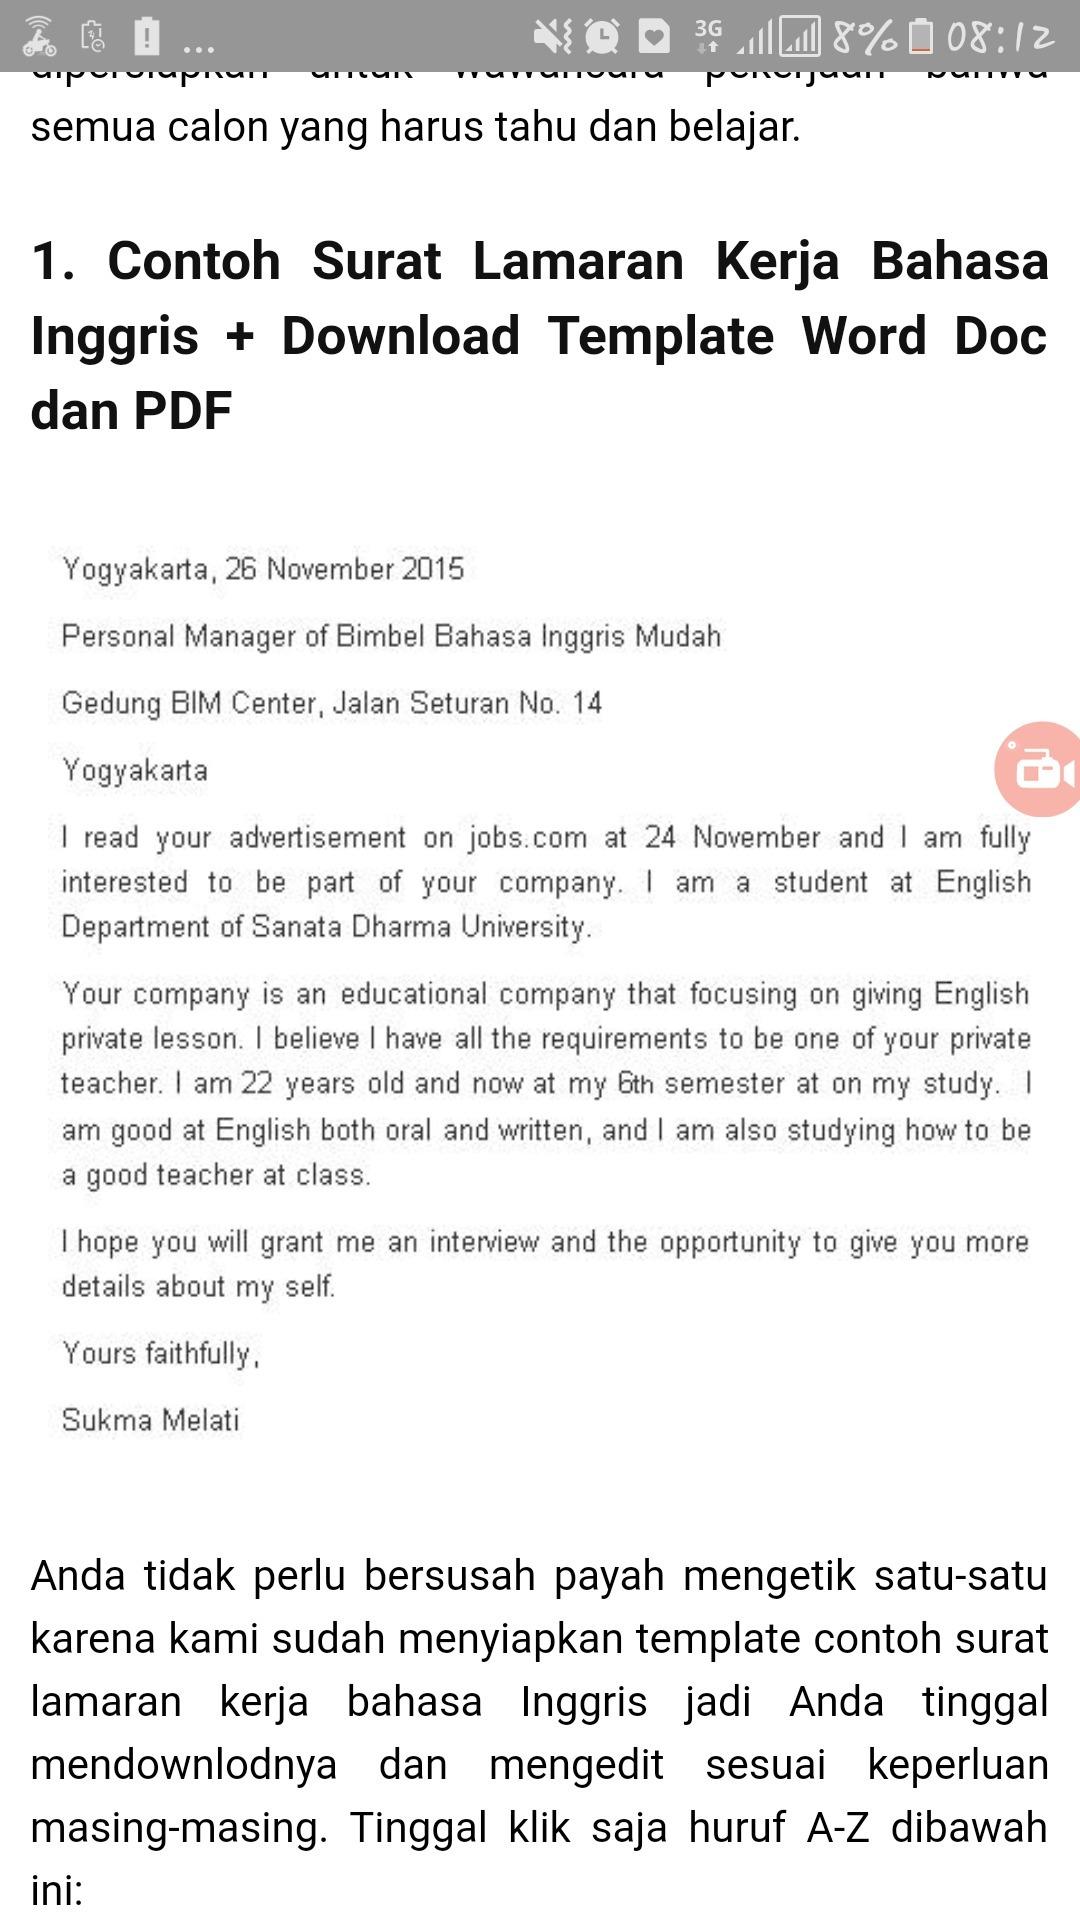 Contoh Surat Lamaran Kerja Bahasa Inggris Teacher